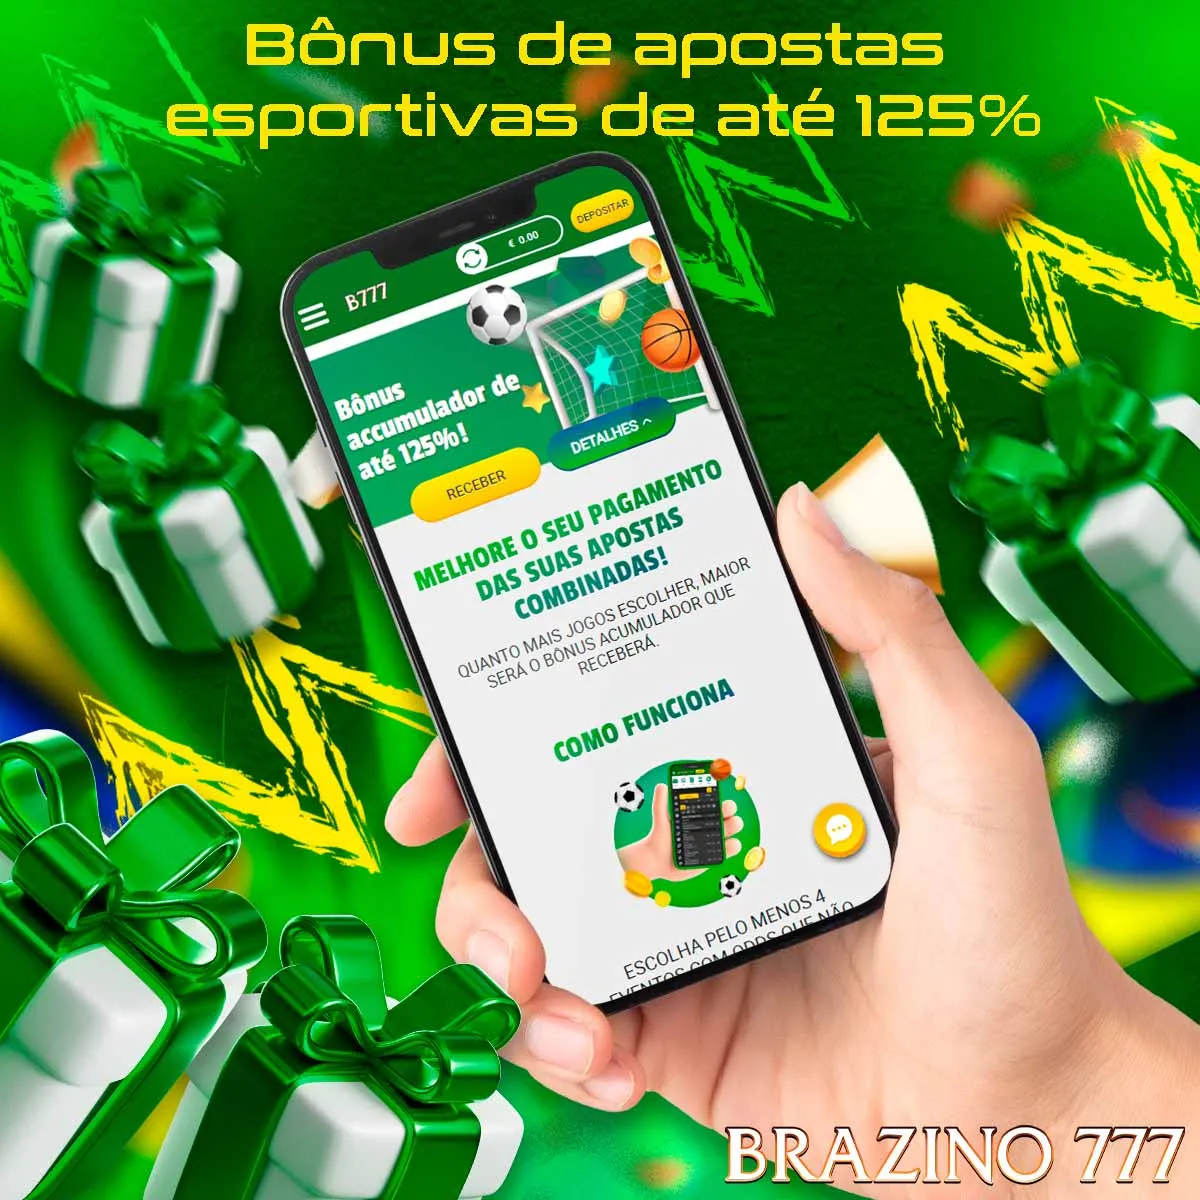 Visão geral do bônus de apostas esportivas da casa de apostas Brazino777 no Brasil